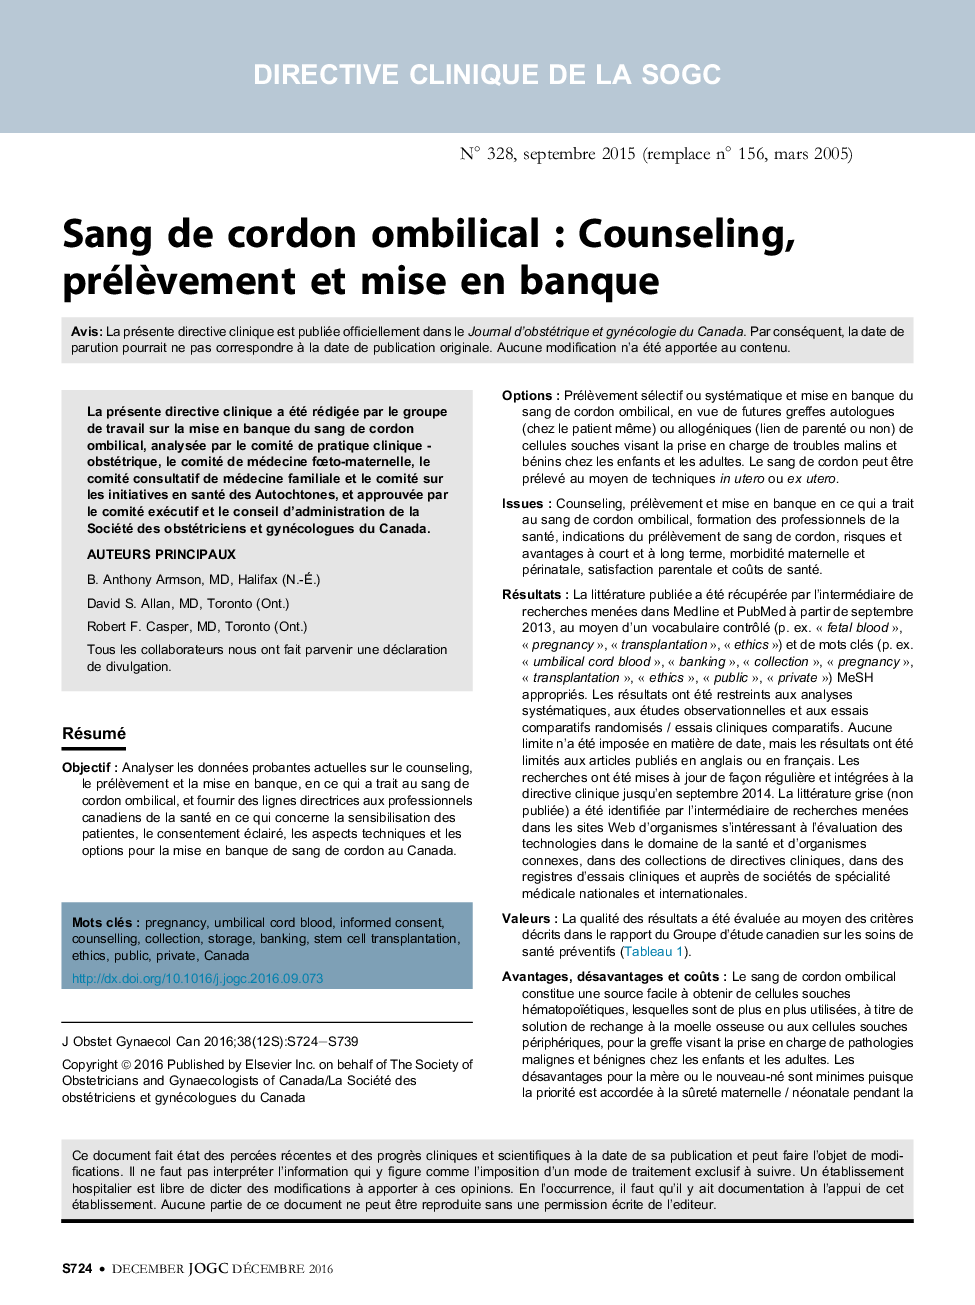 Sang de cordon ombilical : Counseling, prélÃ¨vement et mise en banque